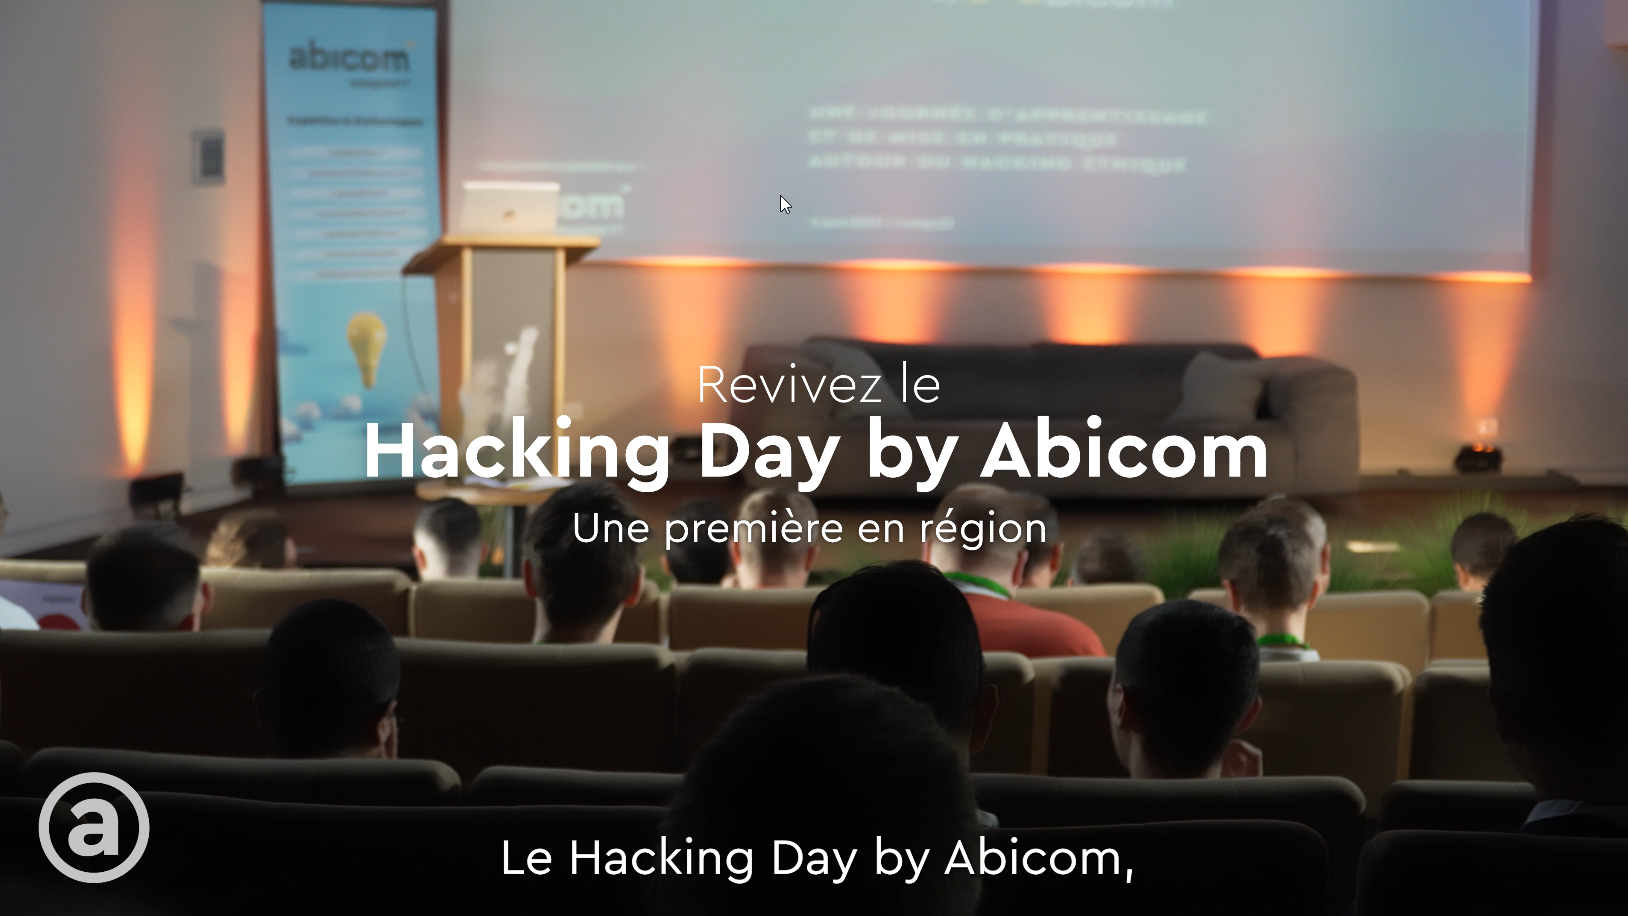 Lire la suite à propos de l’article Aftermovie – Hacking Day by Abicom